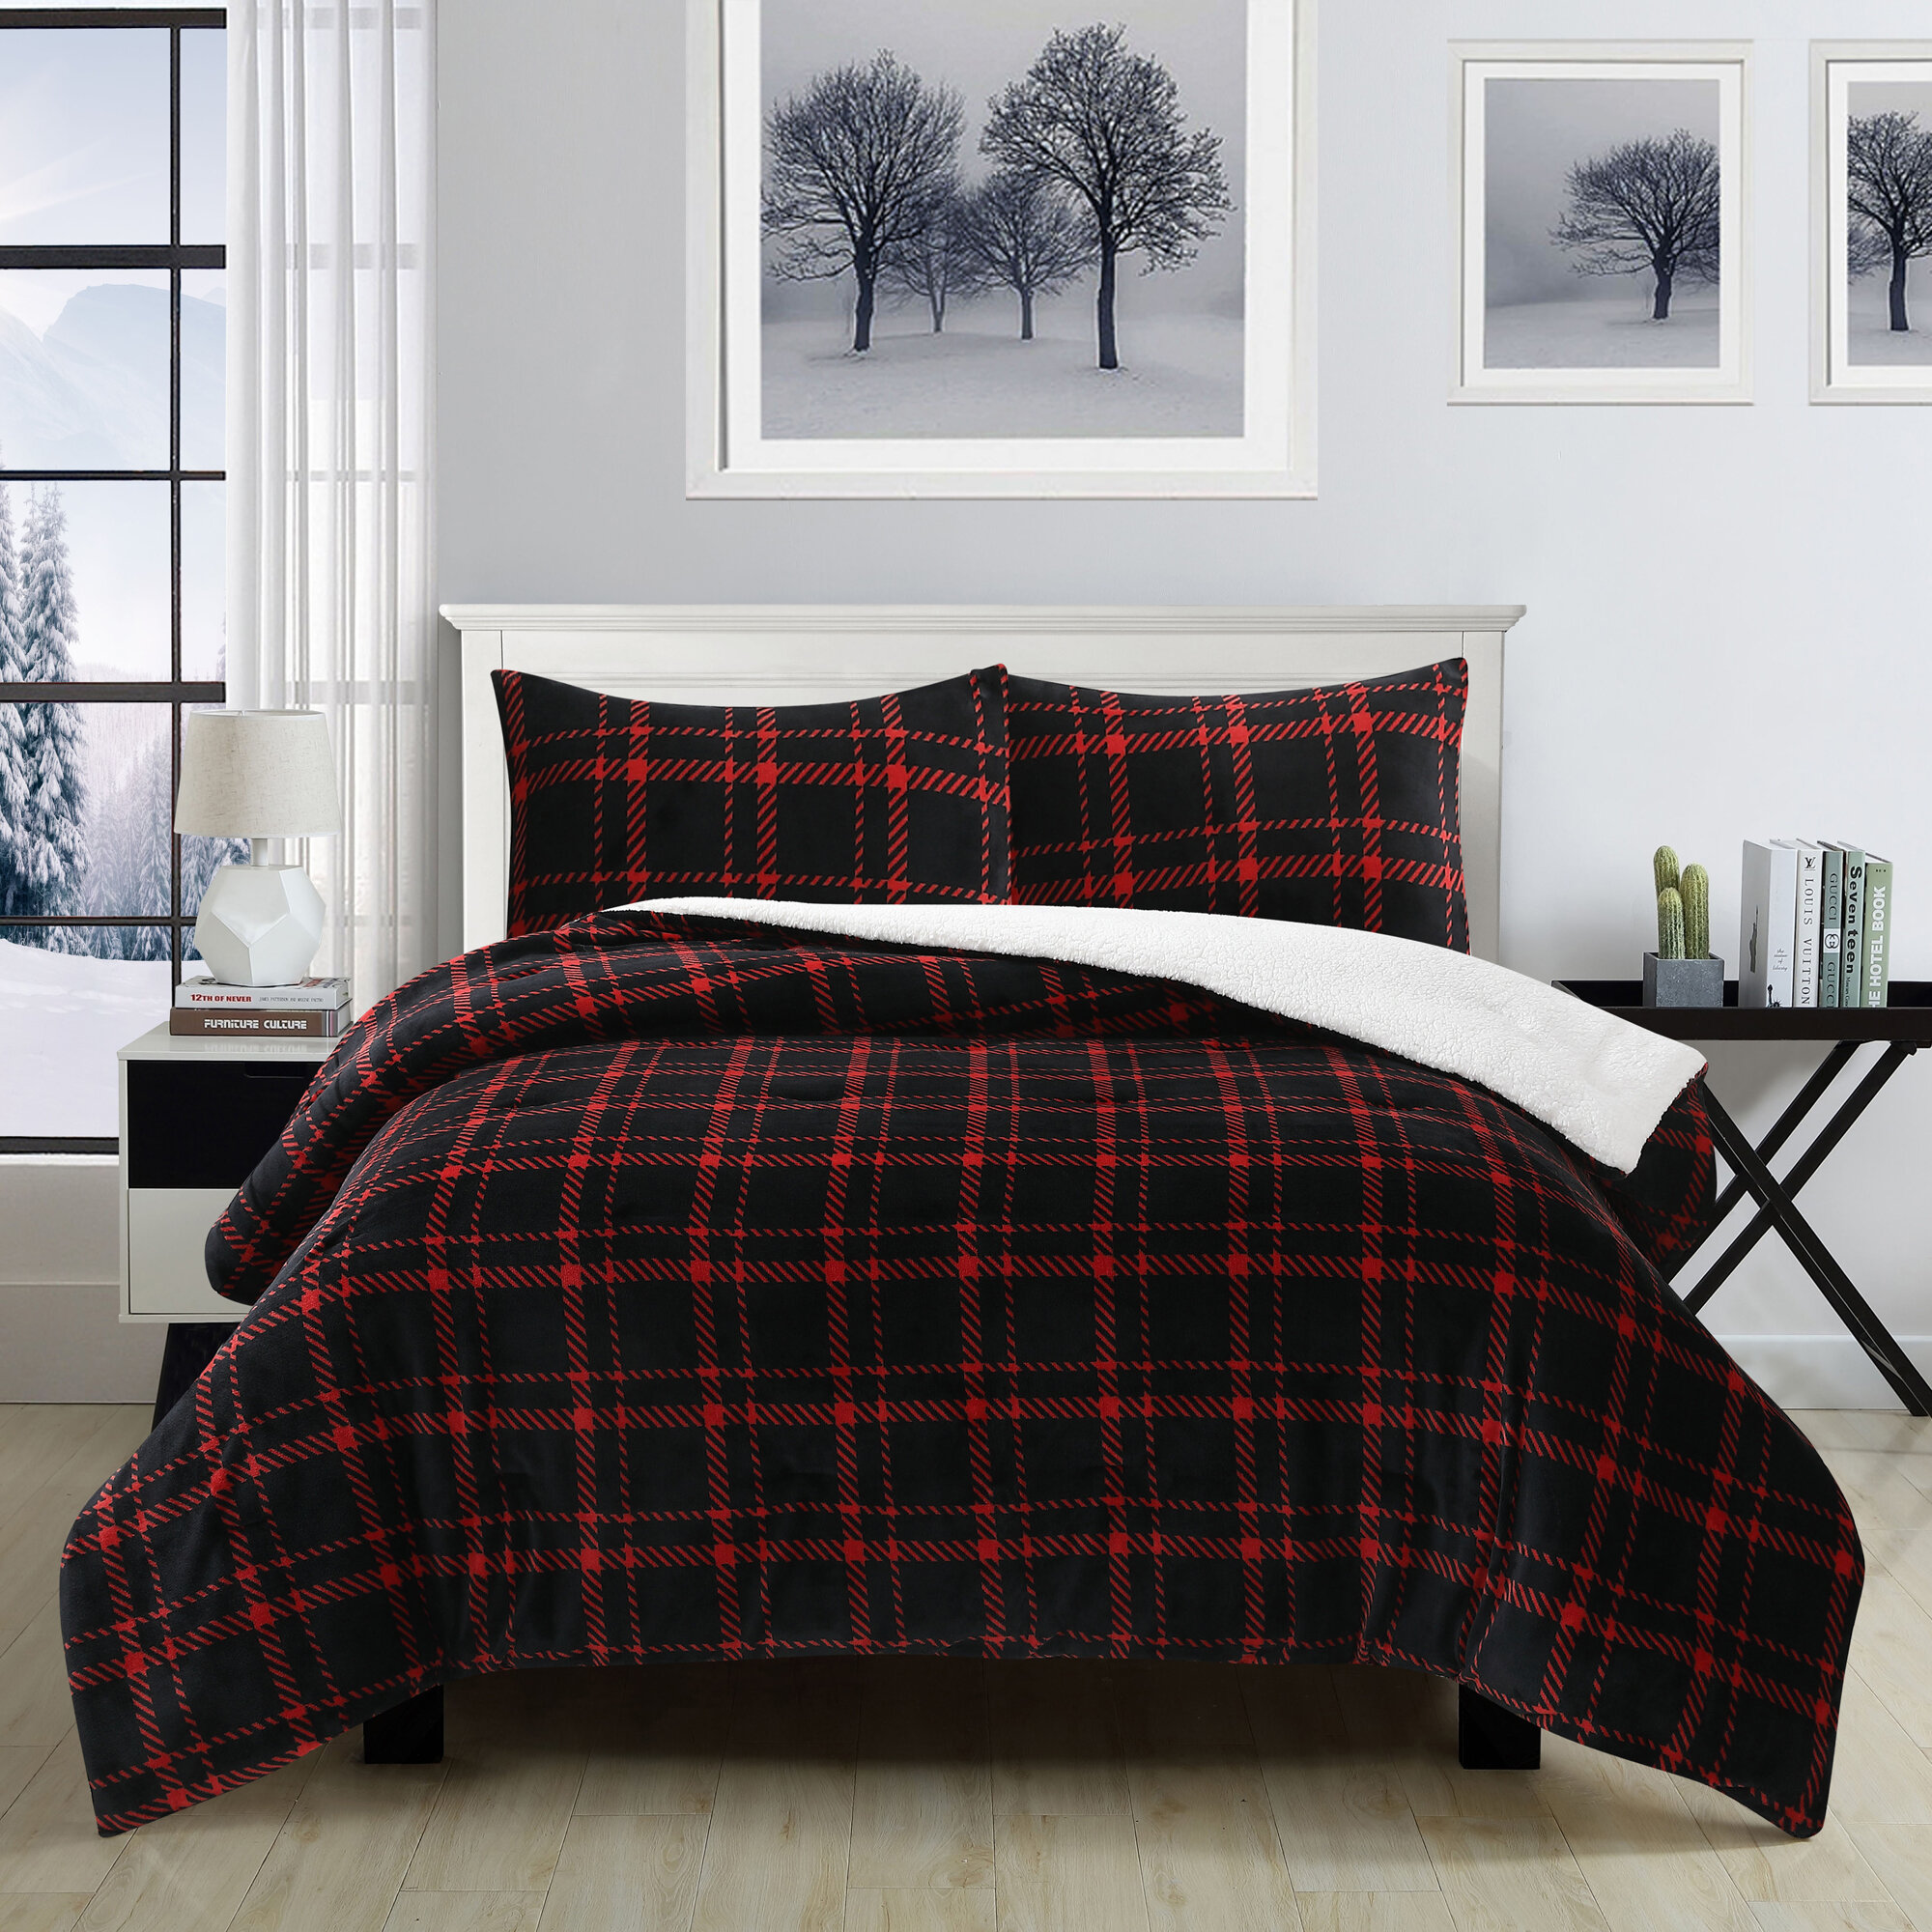 Louis Vuitton 7 3d Personalized Customized Bedding Sets Duvet